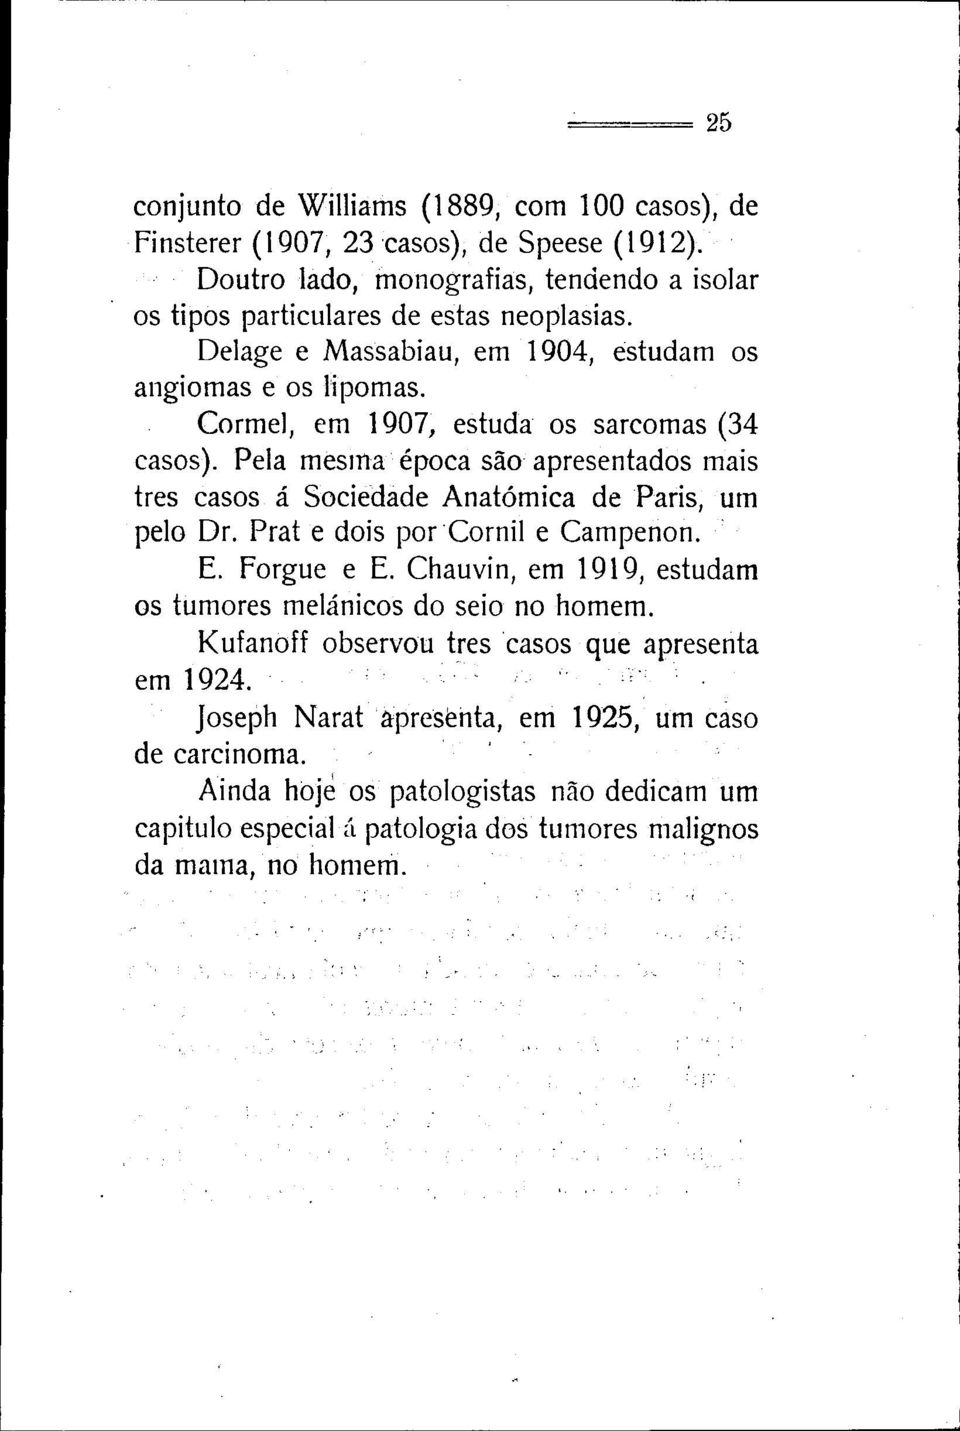 Cormel, em 1907, estuda os sarcomas (34 casos). Pela mesma época são apresentados mais três casos á Sociedade Anatómica de Paris, um pelo Dr. Prat e dois por Cornil e Campenon. E.